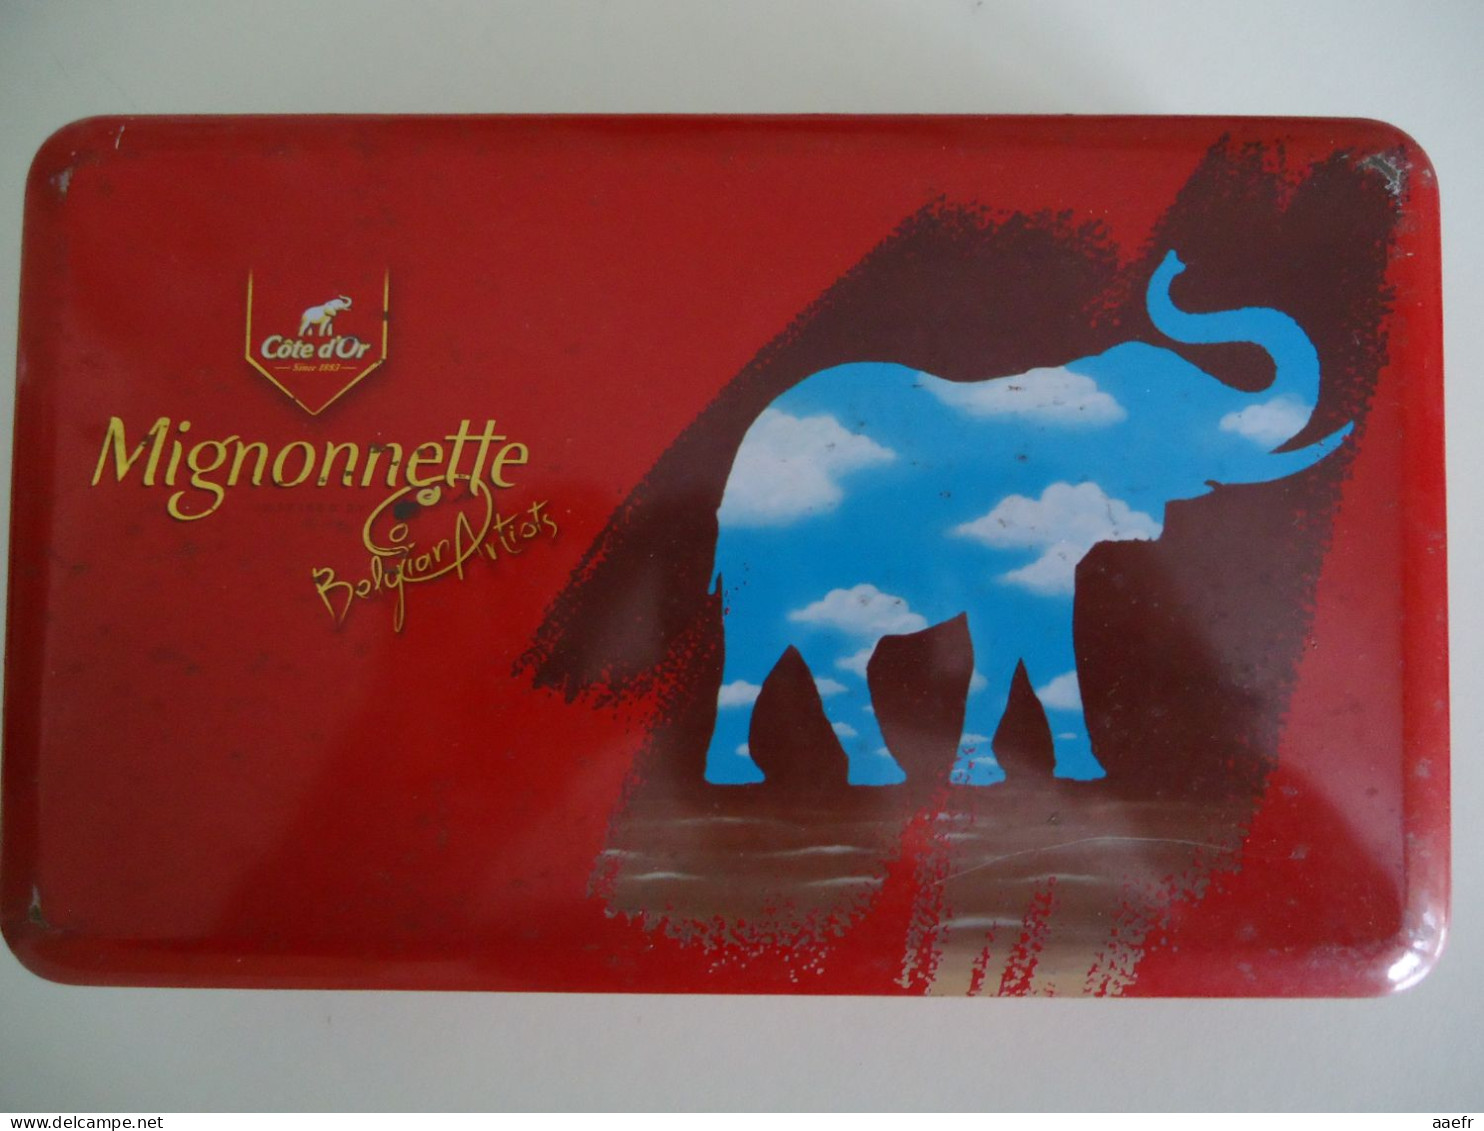 Boîte En Métal 2006 -  Côte D'or, Mignonnette, Belgian Artists  - Illustration "à La René Magritte", Eléphant - Dozen